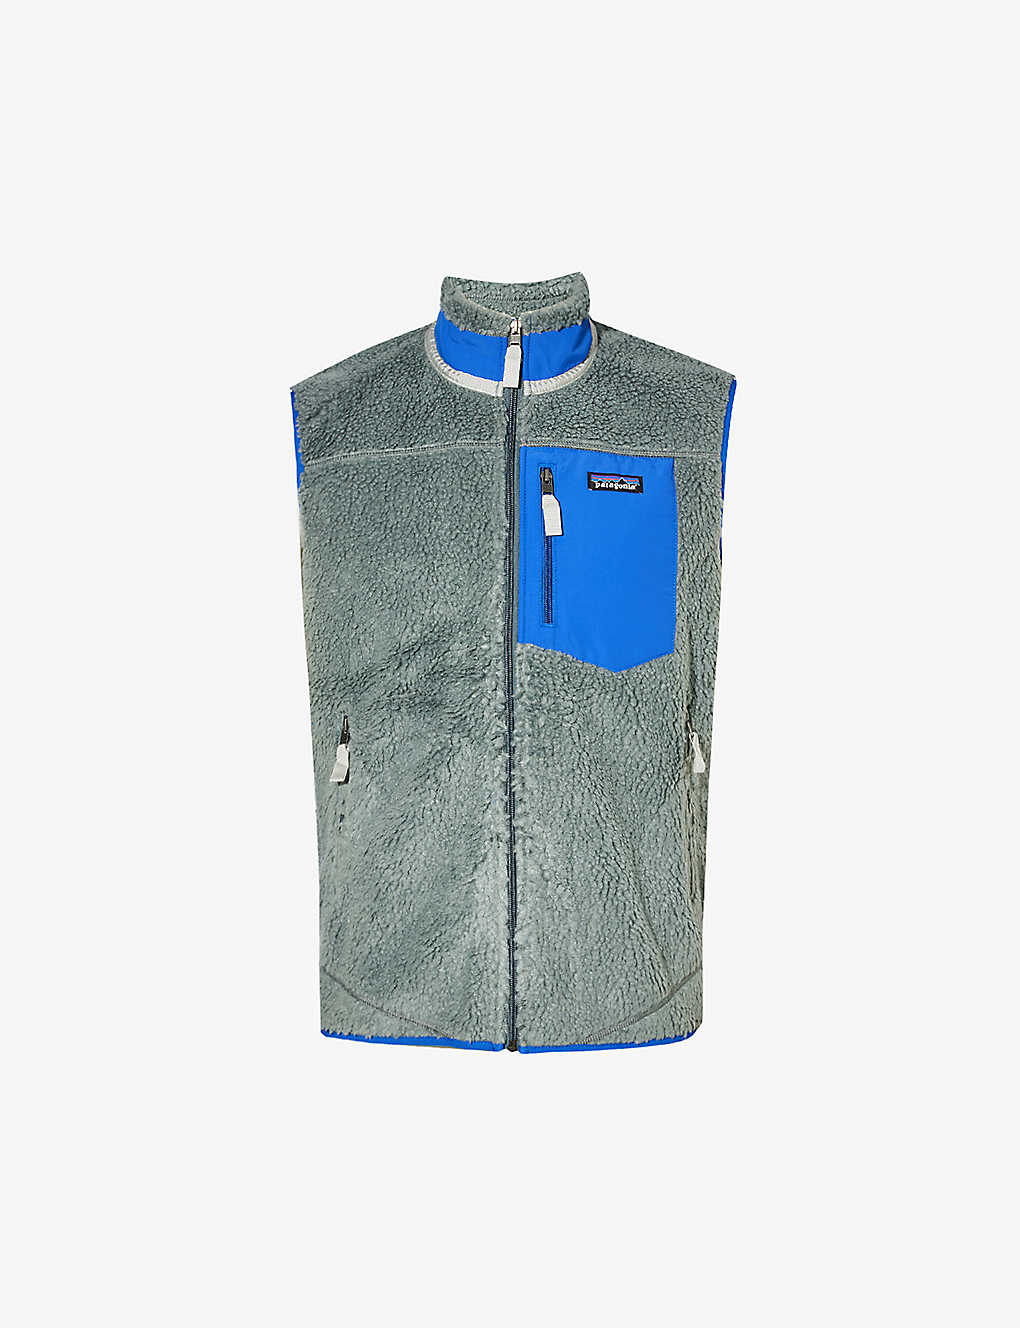 Shop Patagonia Men's Nouveau Green Classic Retro-x Contrast-patch Fleece Vest